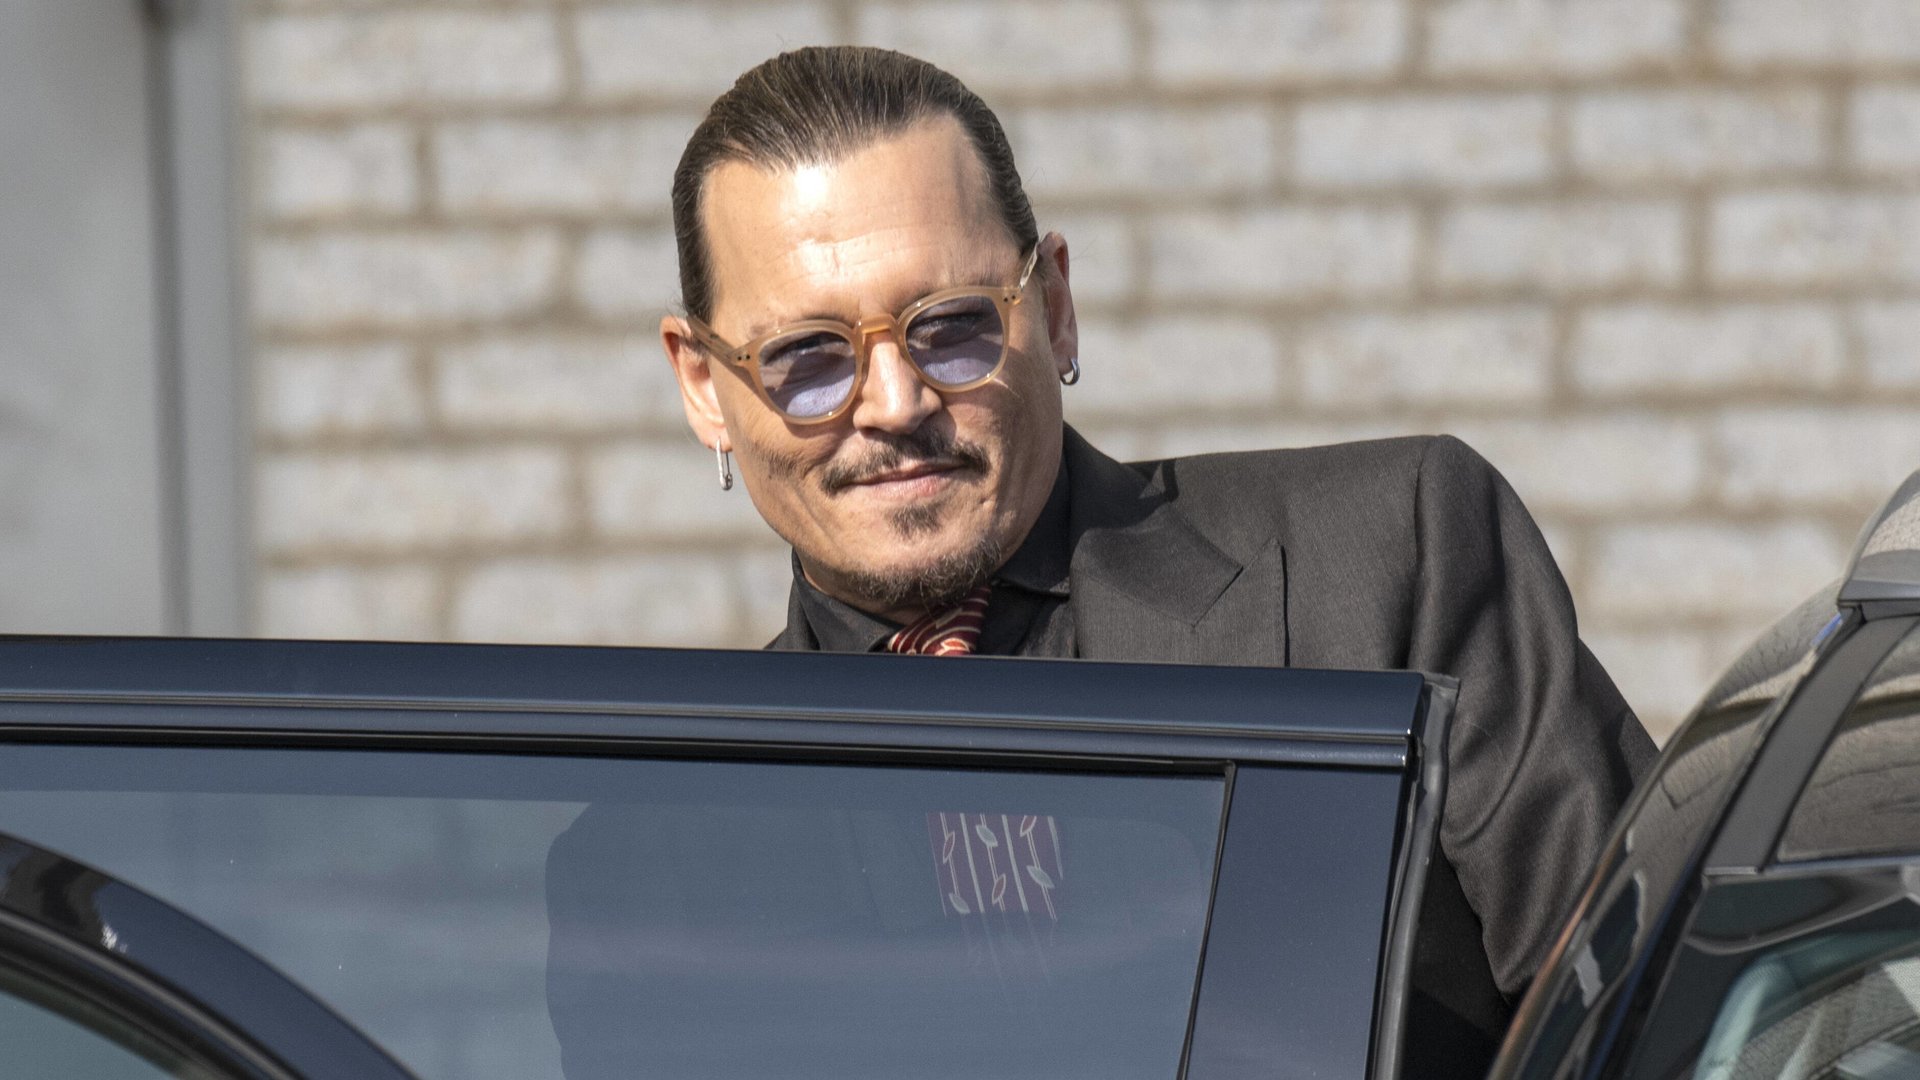 #Mitten im Prozess gegen Amber Heard gesichert: Das ist Johnny Depps neuer Film